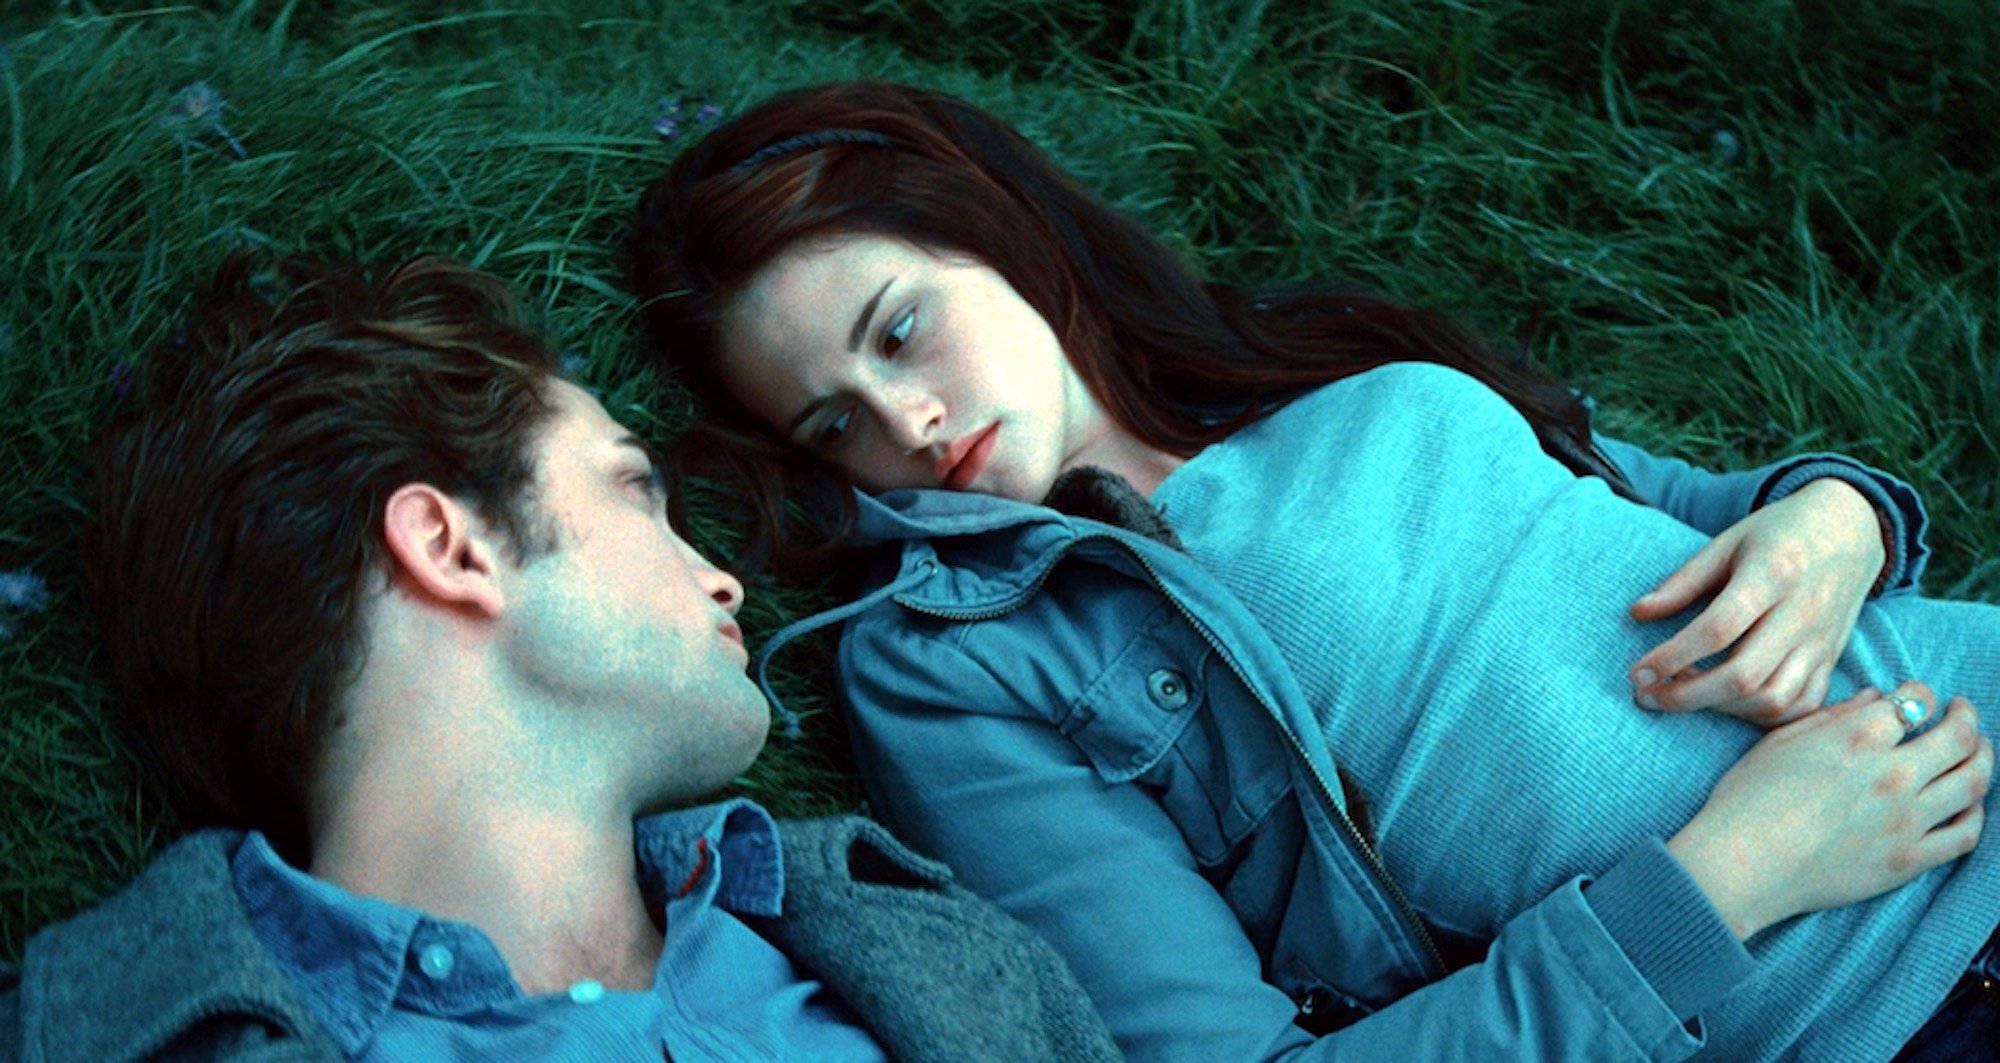 Edward Cullen (Robert Pattinson) and Bella Swan (Kristen Stewart) in Edward's meadow in 'Twilight'